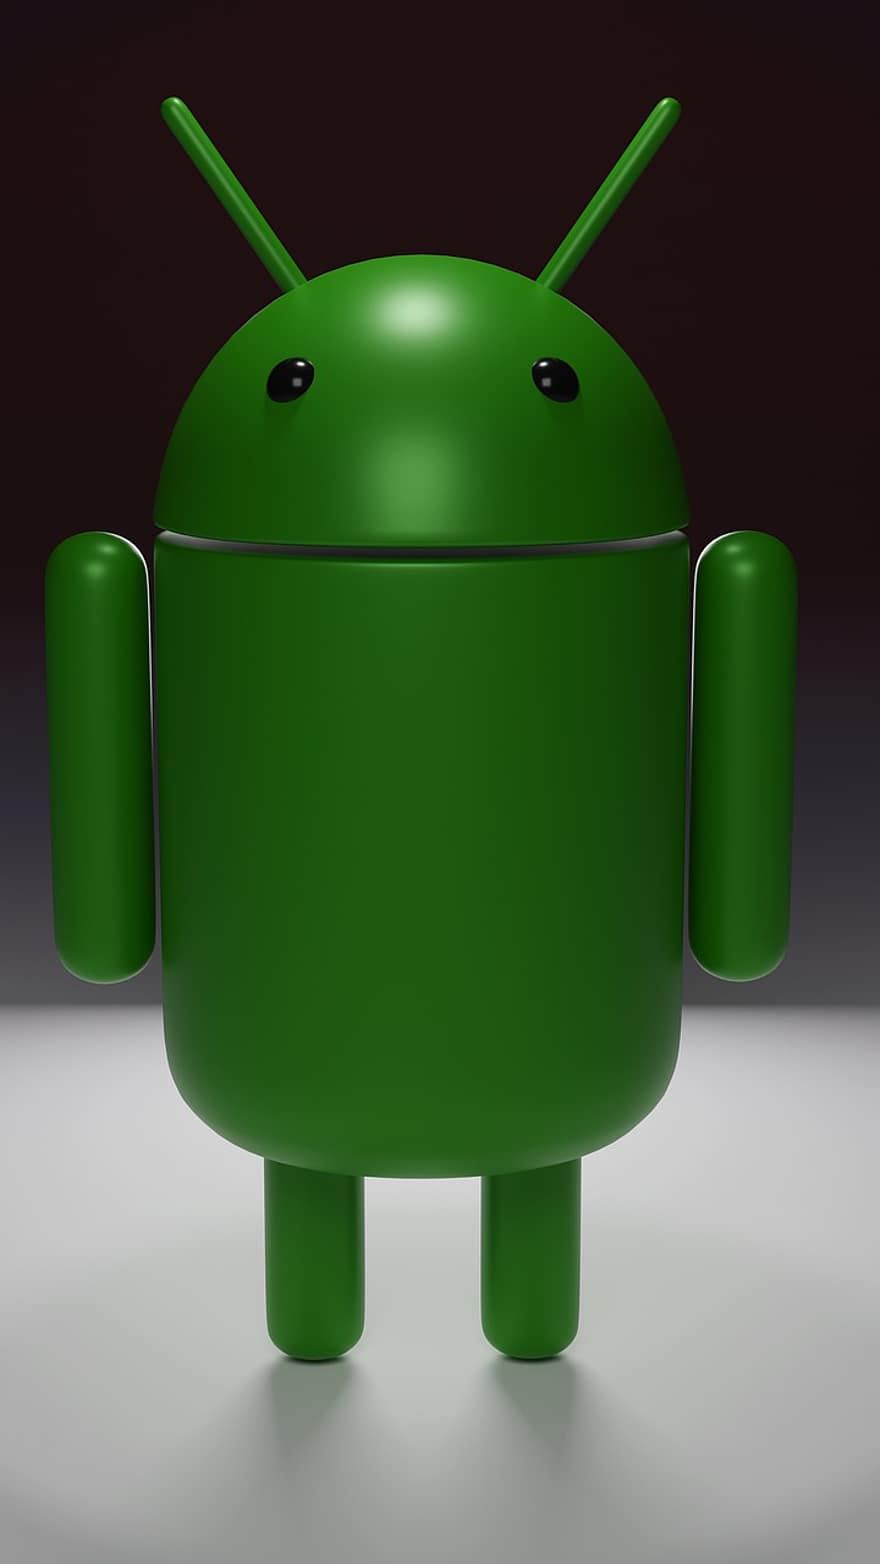 Android, robot, siglă, de sine stătătoare, a închide, Google, Sursa deschisa, icoană, minimalist, perspectivă, permanent